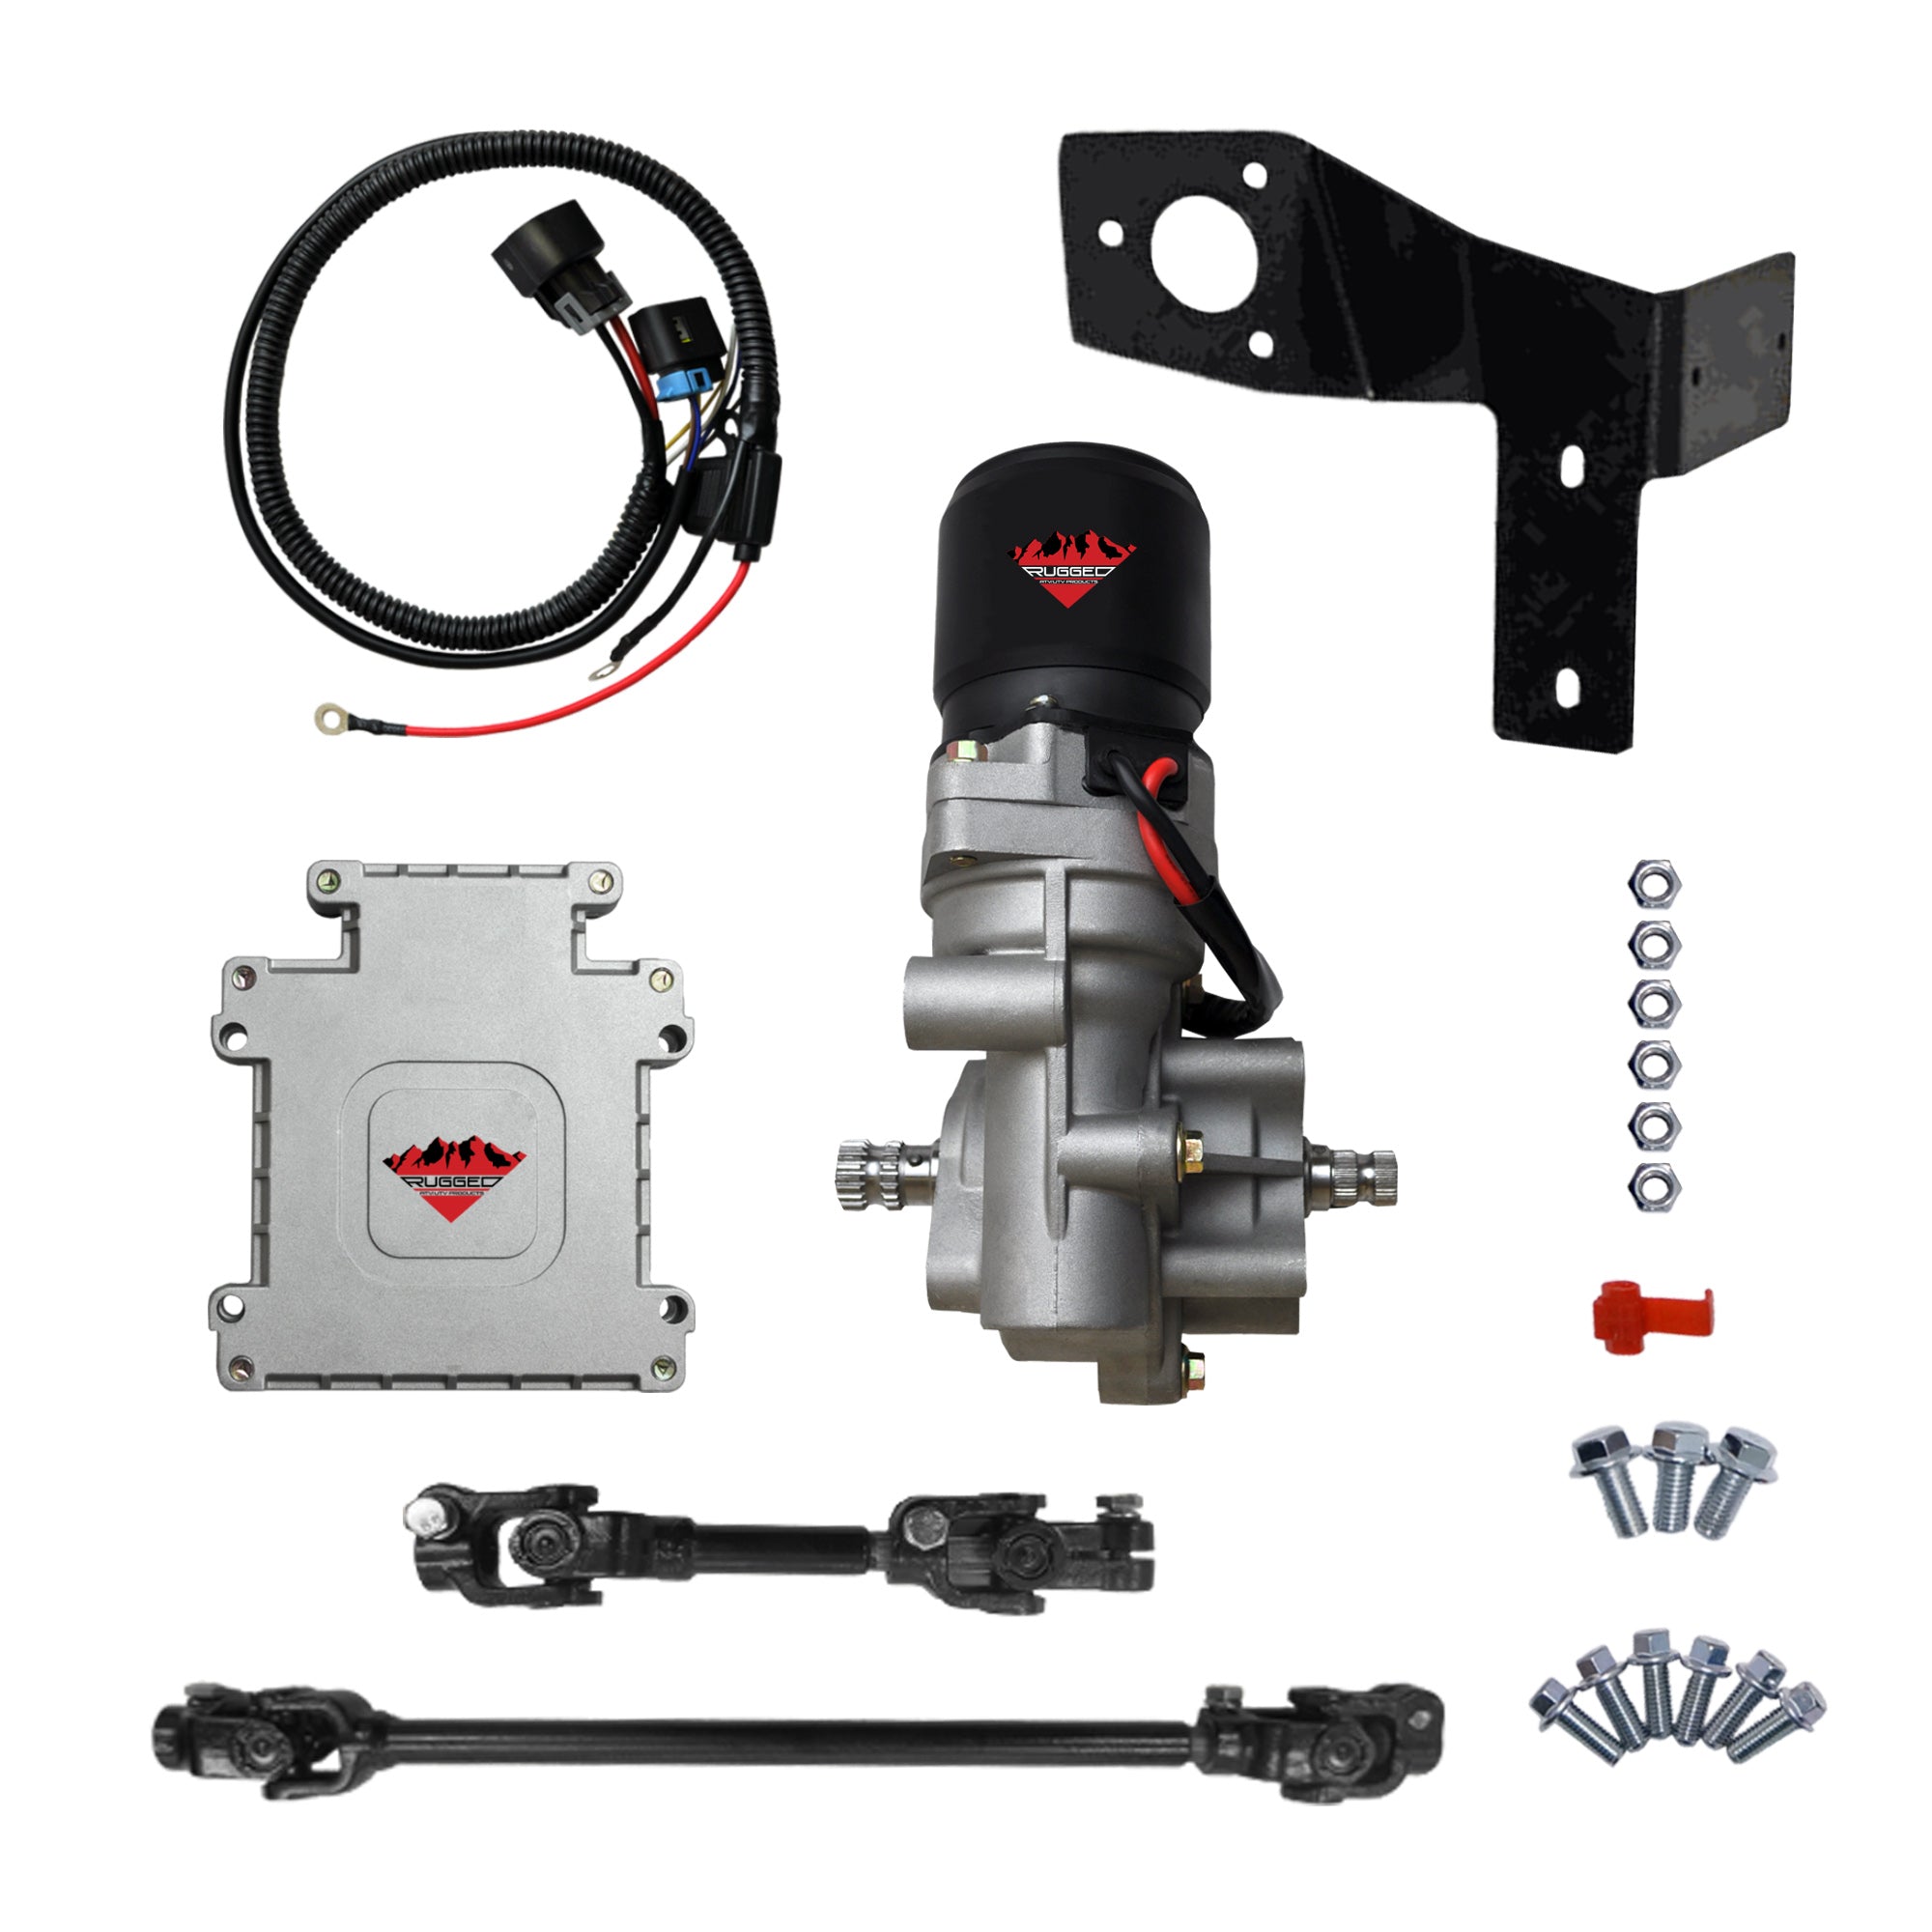 Electric Power Steering Kit for John Deere Gator HPX 